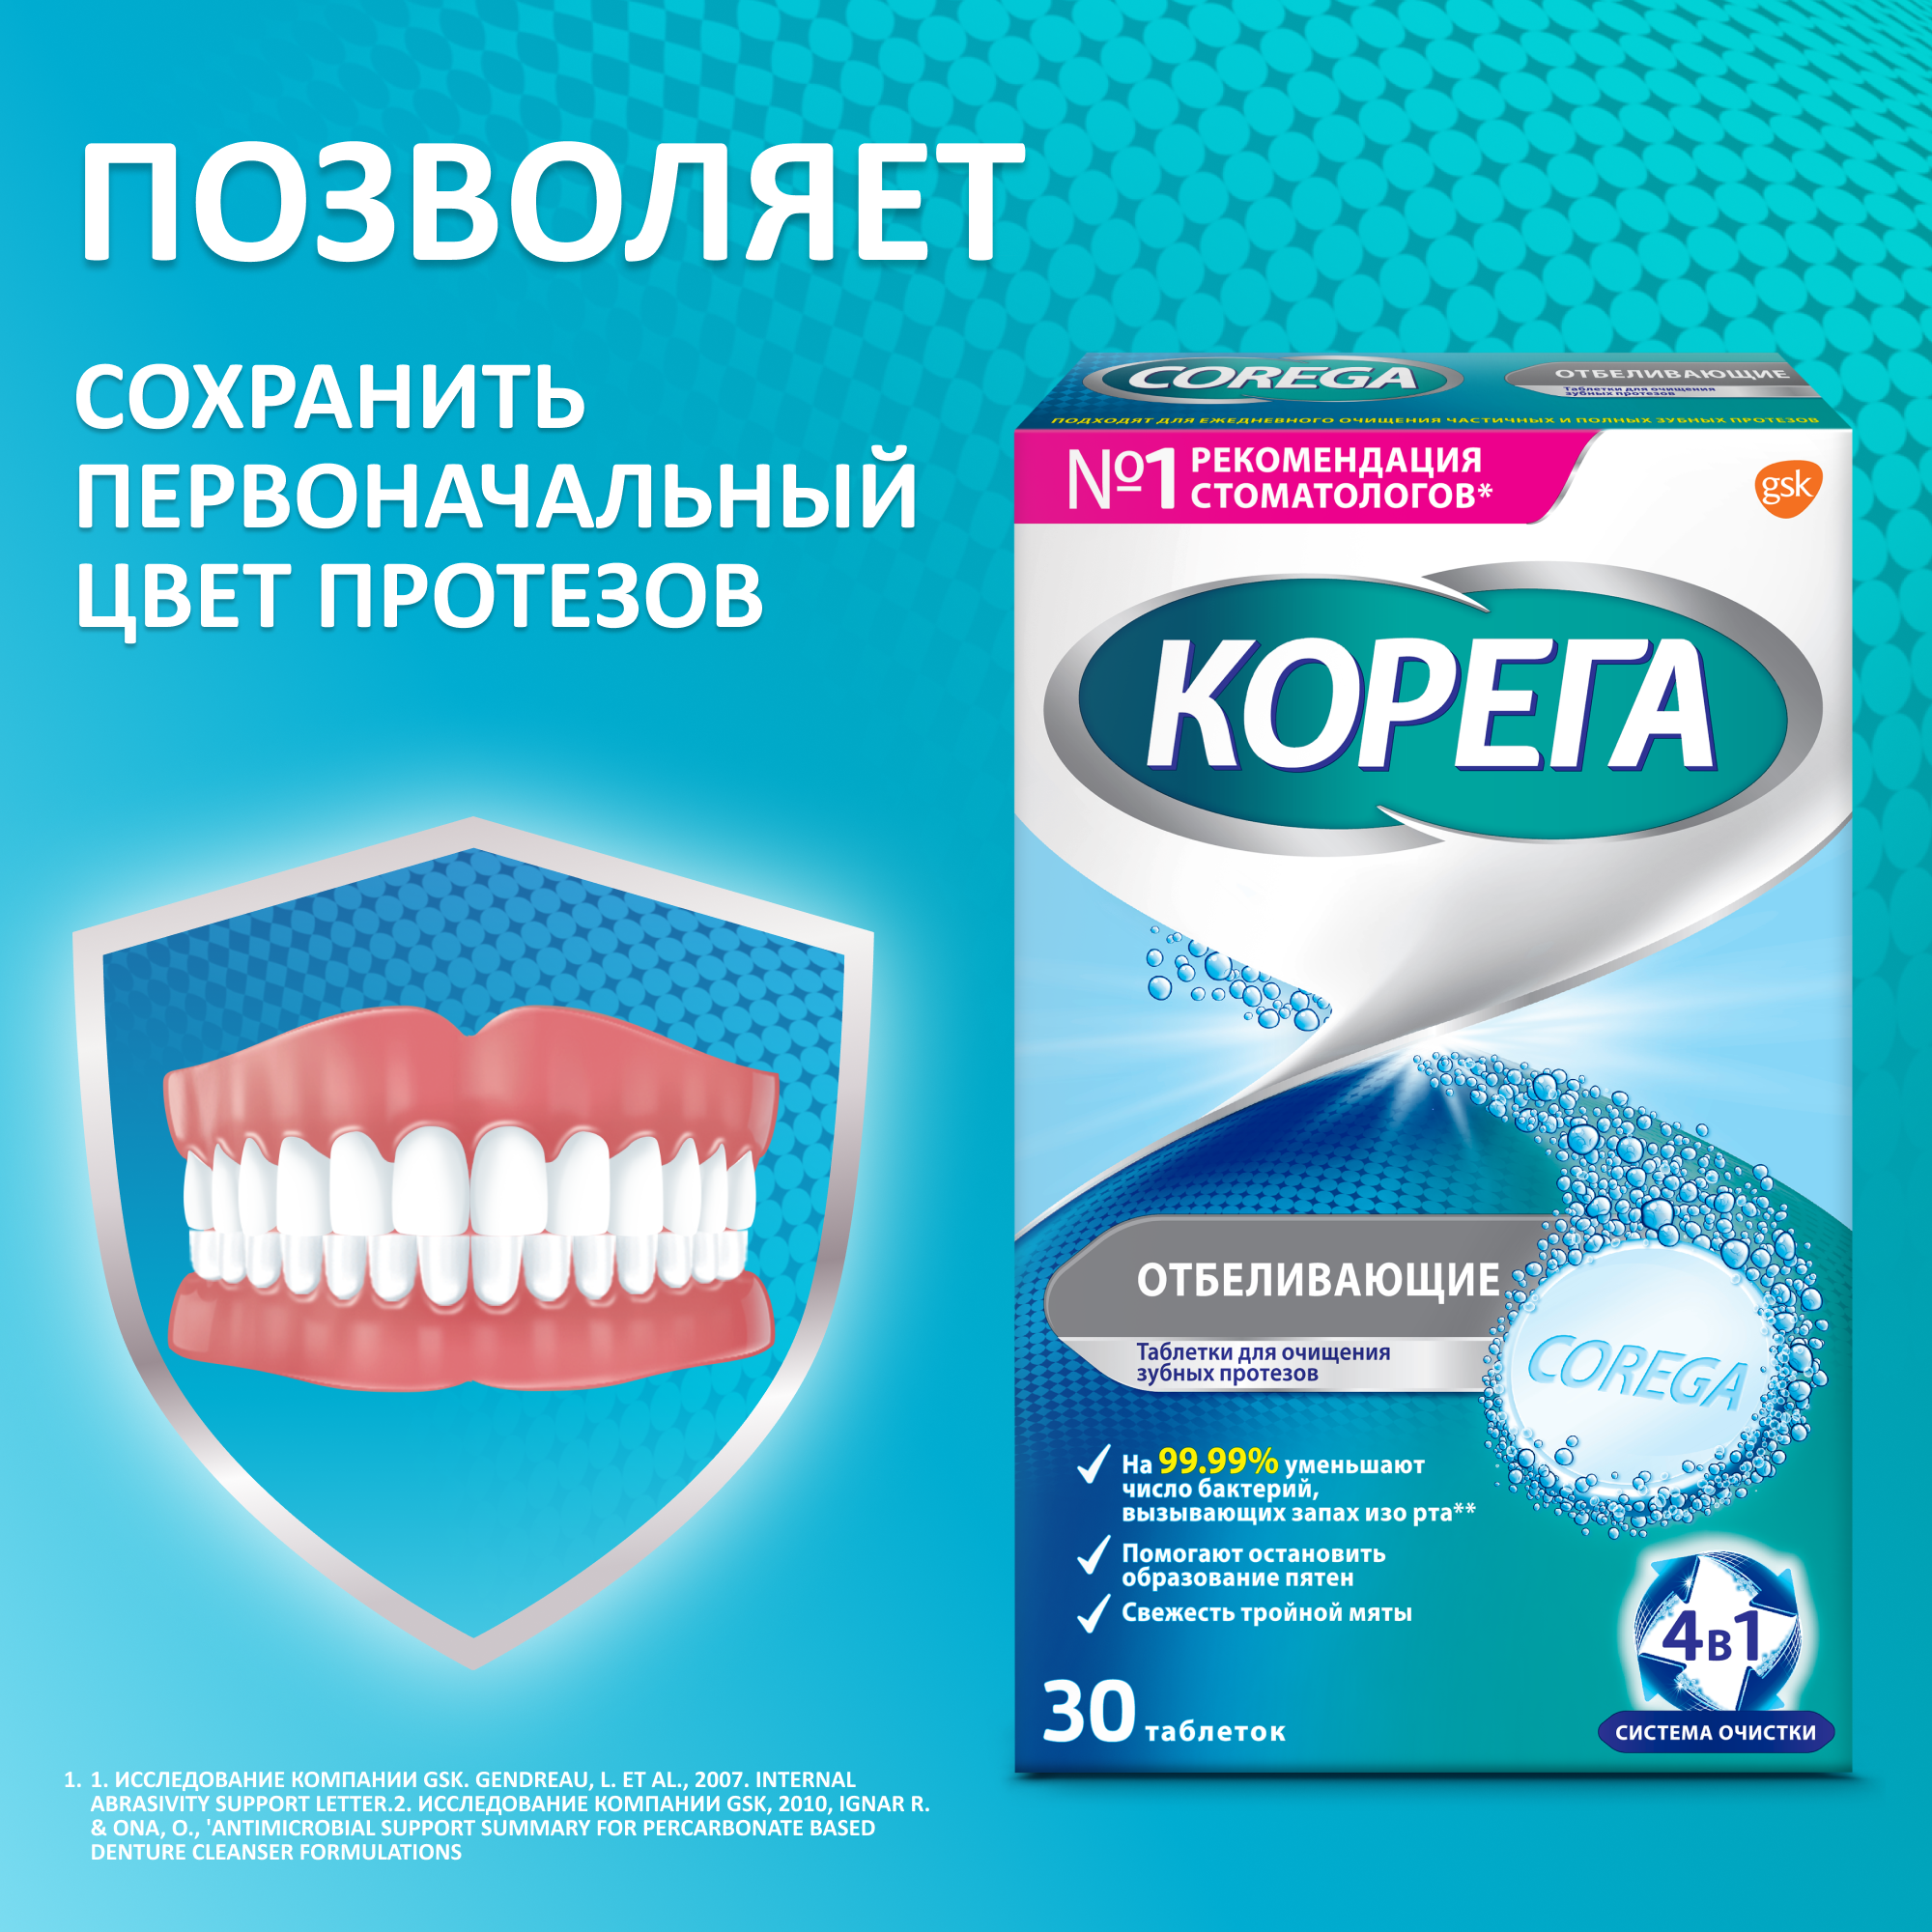 Корега Отбеливающие таблетки для очищения и восстановления естественной белизны зубных протезов, свежесть тройной мяты, 30 шт